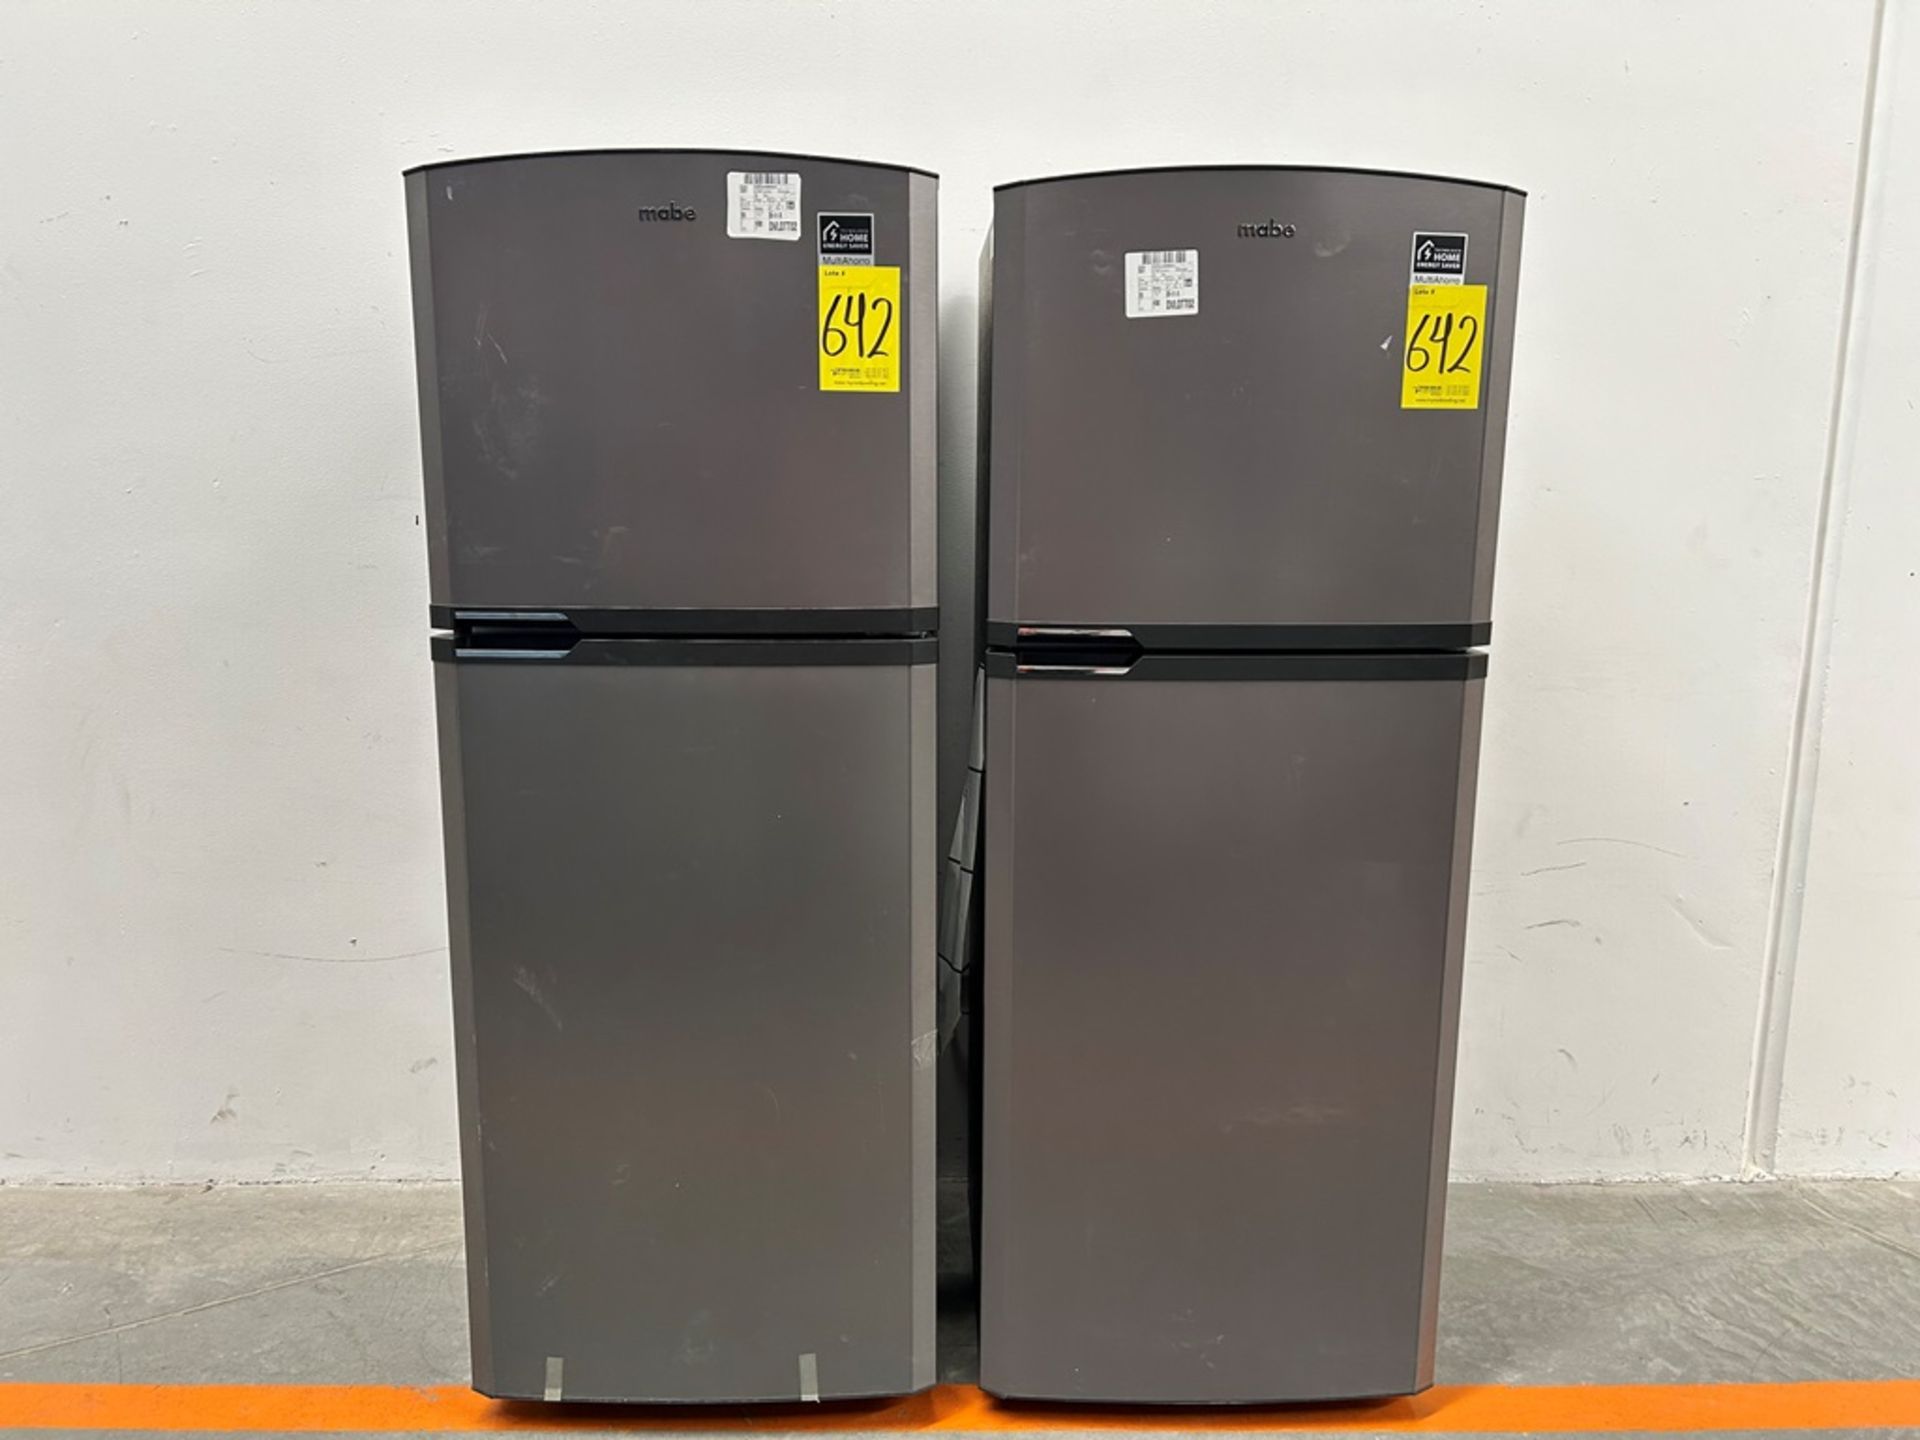 Lote de 2 refrigeradores contiene: 1 refrigerador Marca MABE, Modelo RME360PVMRM, Serie 01988, Colo